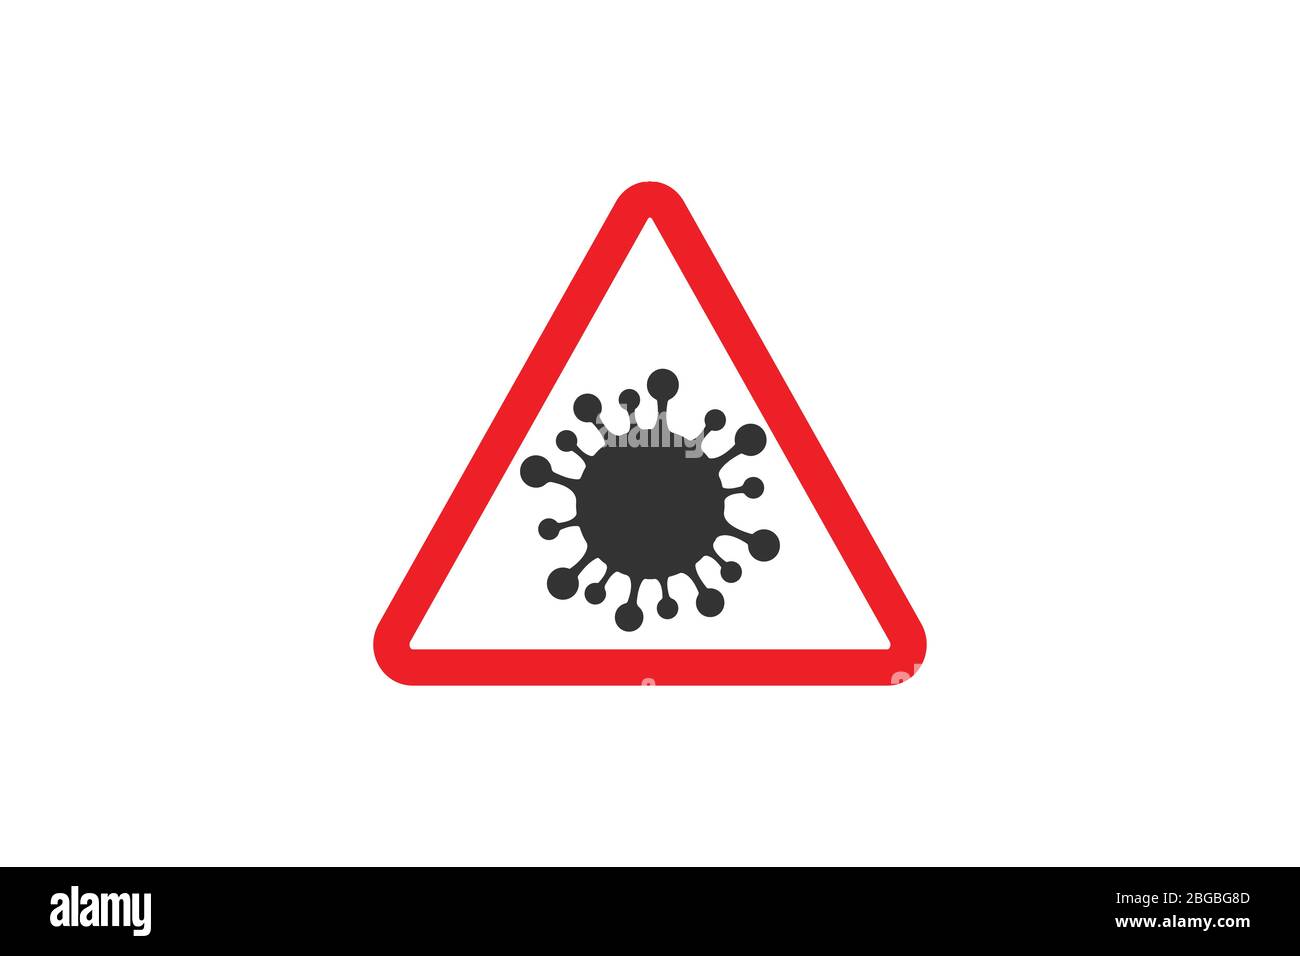 Coronavirus-Zeichen. Corona Virus Bakteria Cell Icon, 2019-nCoV in Warnhinweisen für Verkehrszeichen. Warnsymbol von COVID-19, neuartiges Coronavirus. Vektorsymbol. Stock Vektor